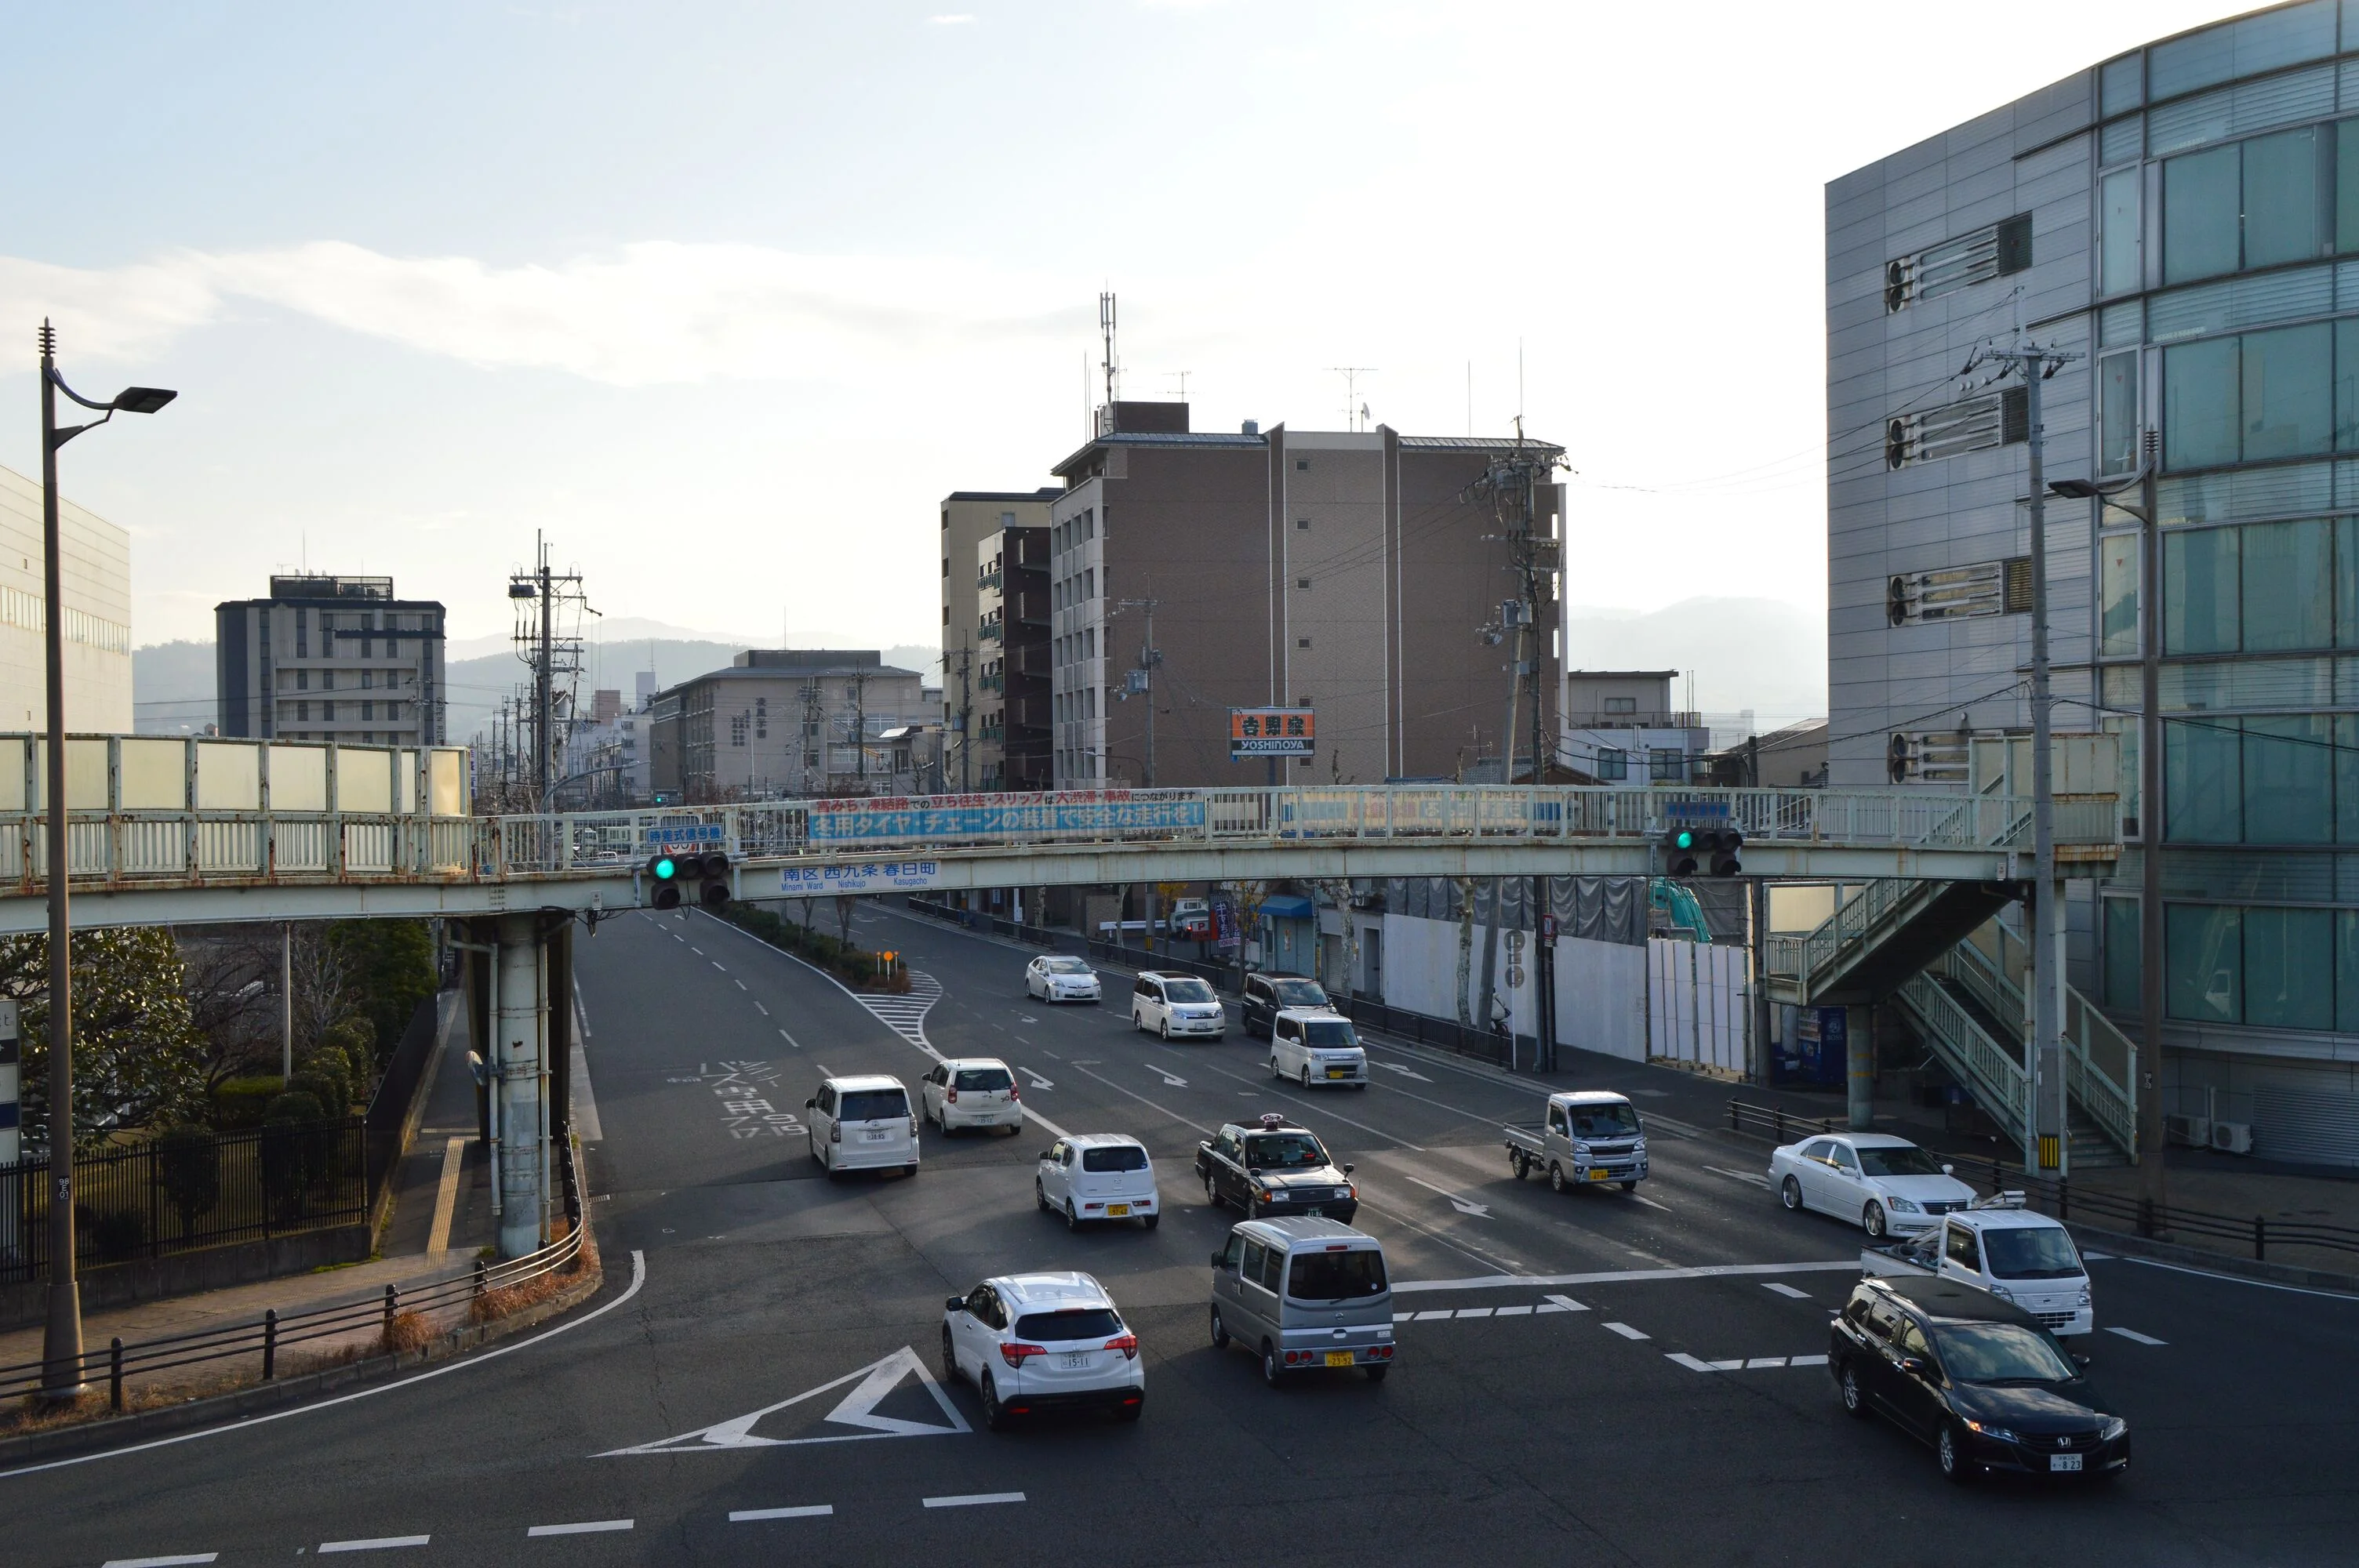 京都街道圖,左右轉彎先後順序,大十字路口,車輛路權示意圖